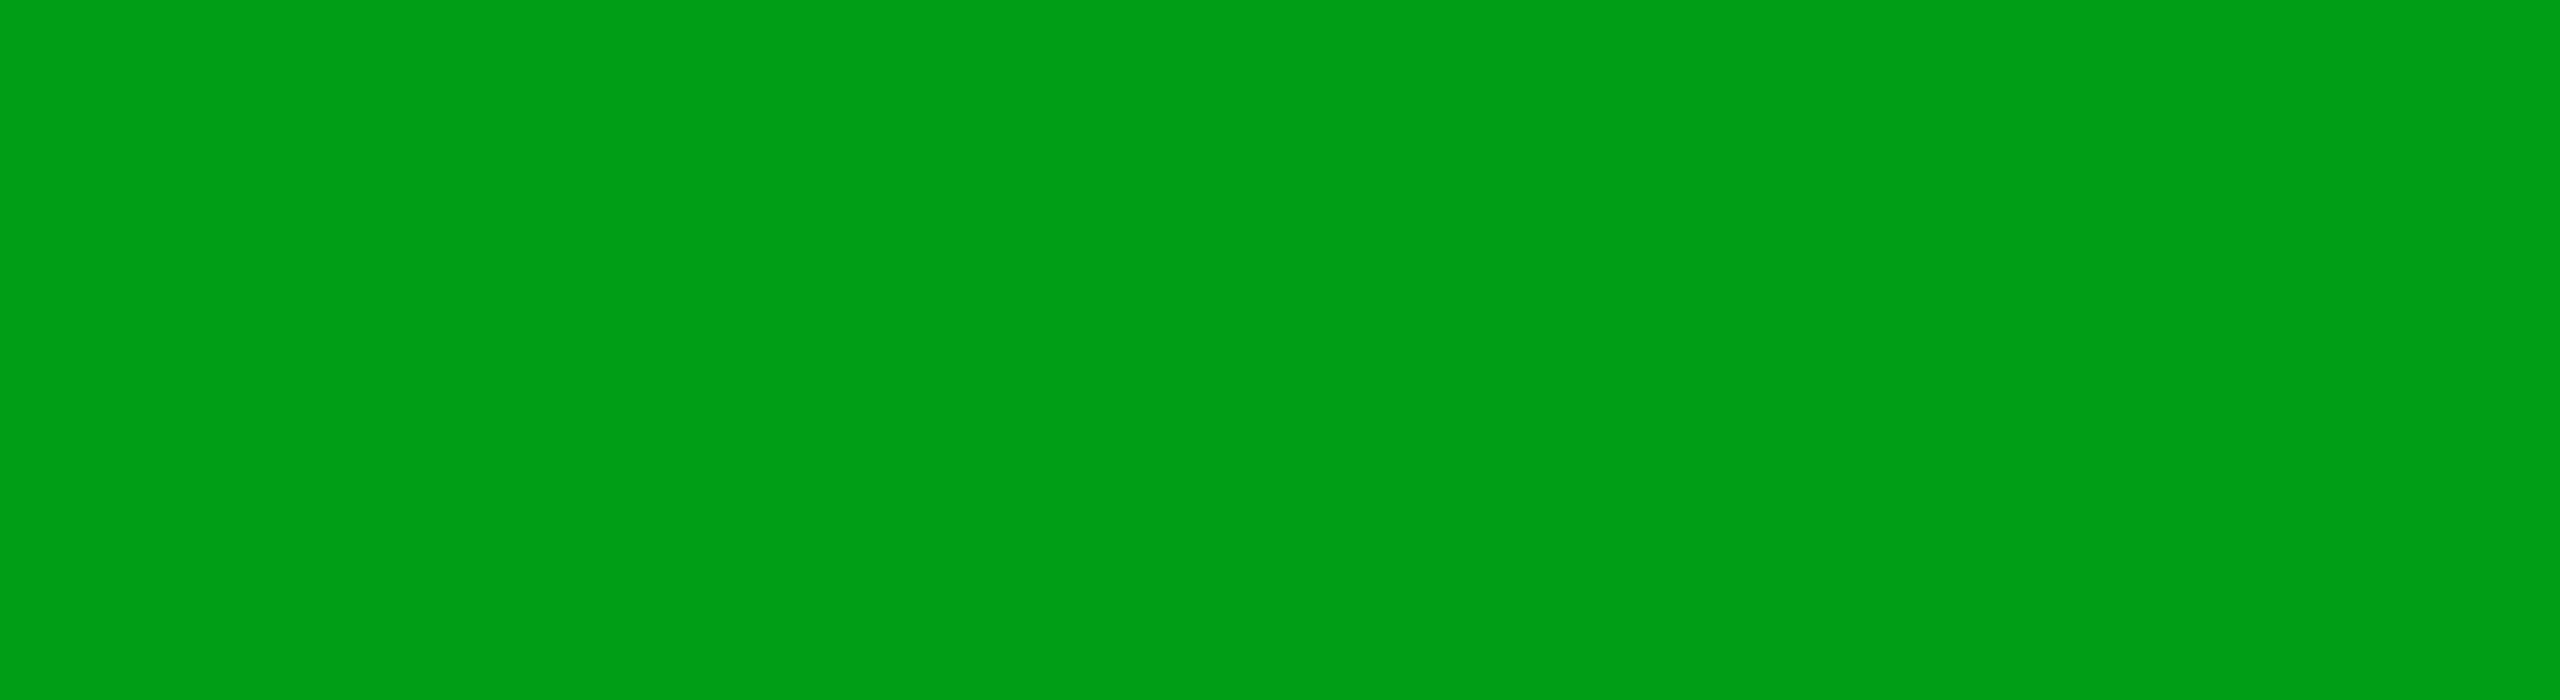 Develey grüner Hintergrund